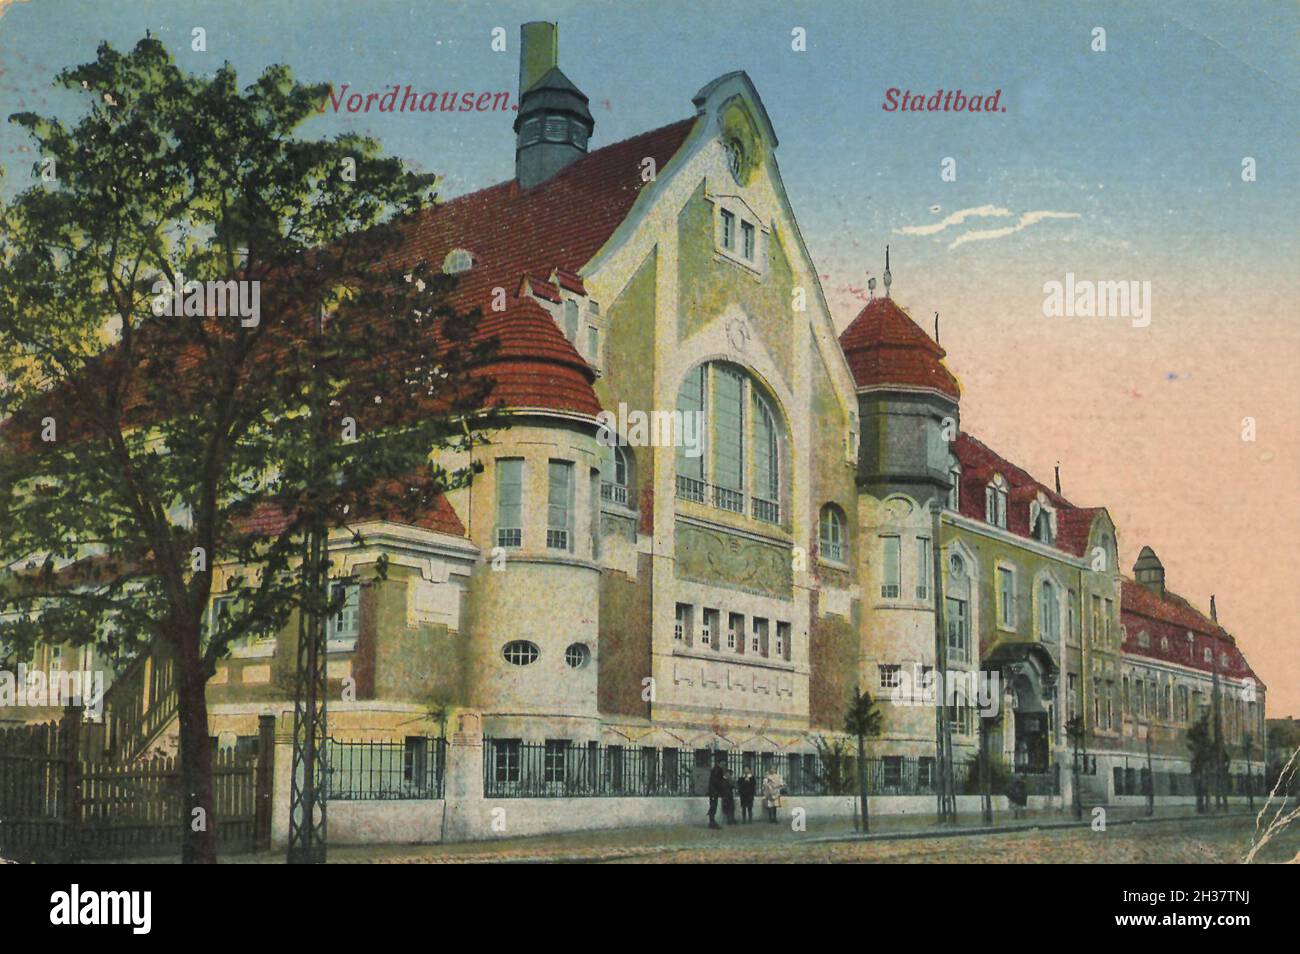 Stadtbad von Nordhausen, Thüringen, Deutschland, Ansicht von CA 1910, digitale Reproduktion einer gemeinfreien Postkarte Banque D'Images